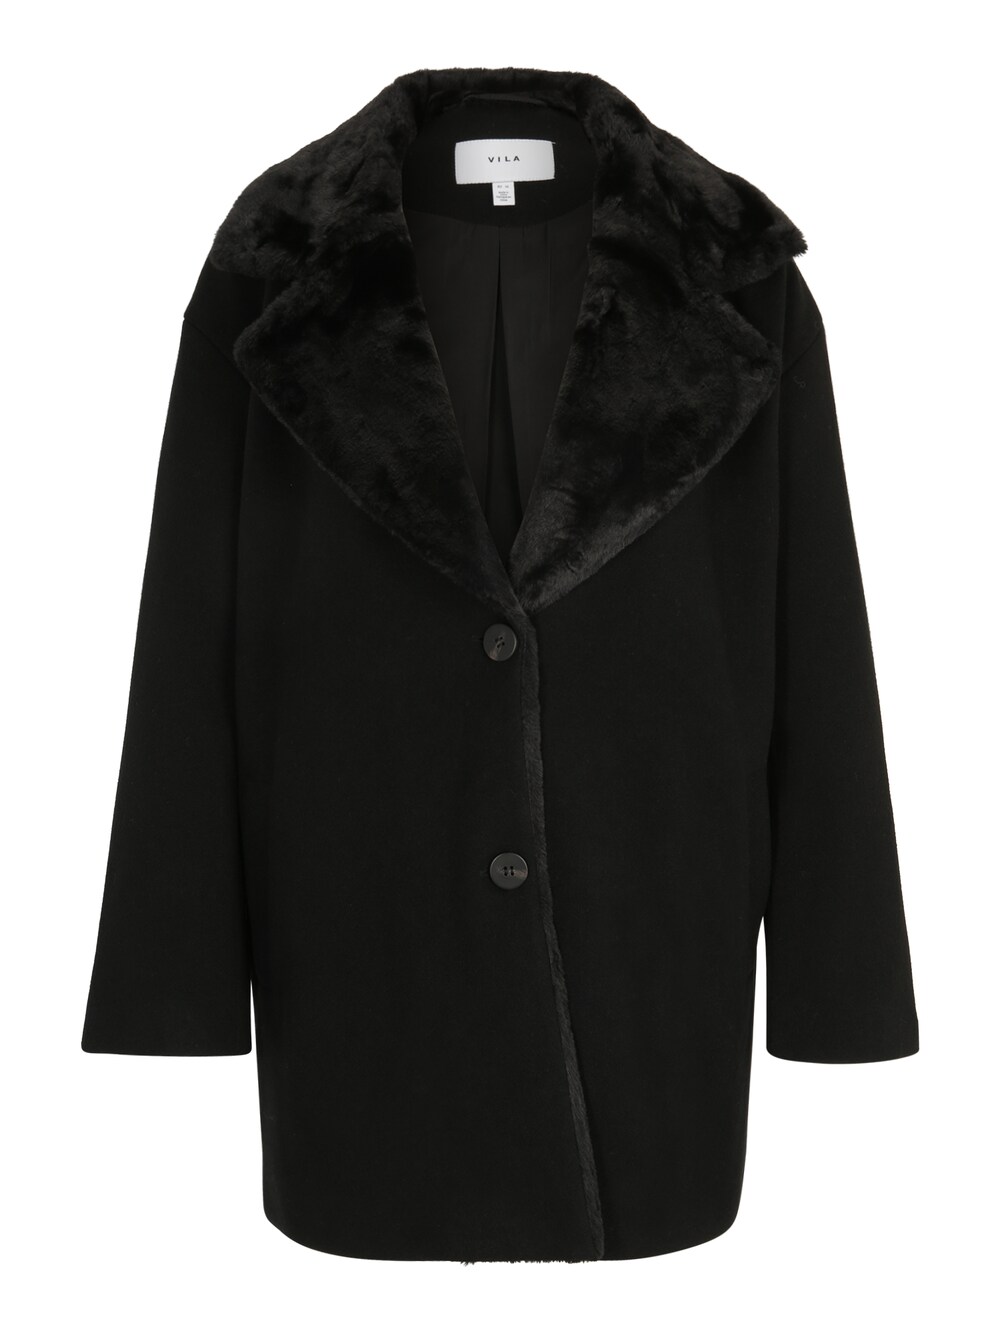 Межсезонное пальто Vila Petite Metil, черный vila блейзер со сборками на рукавах vila черный